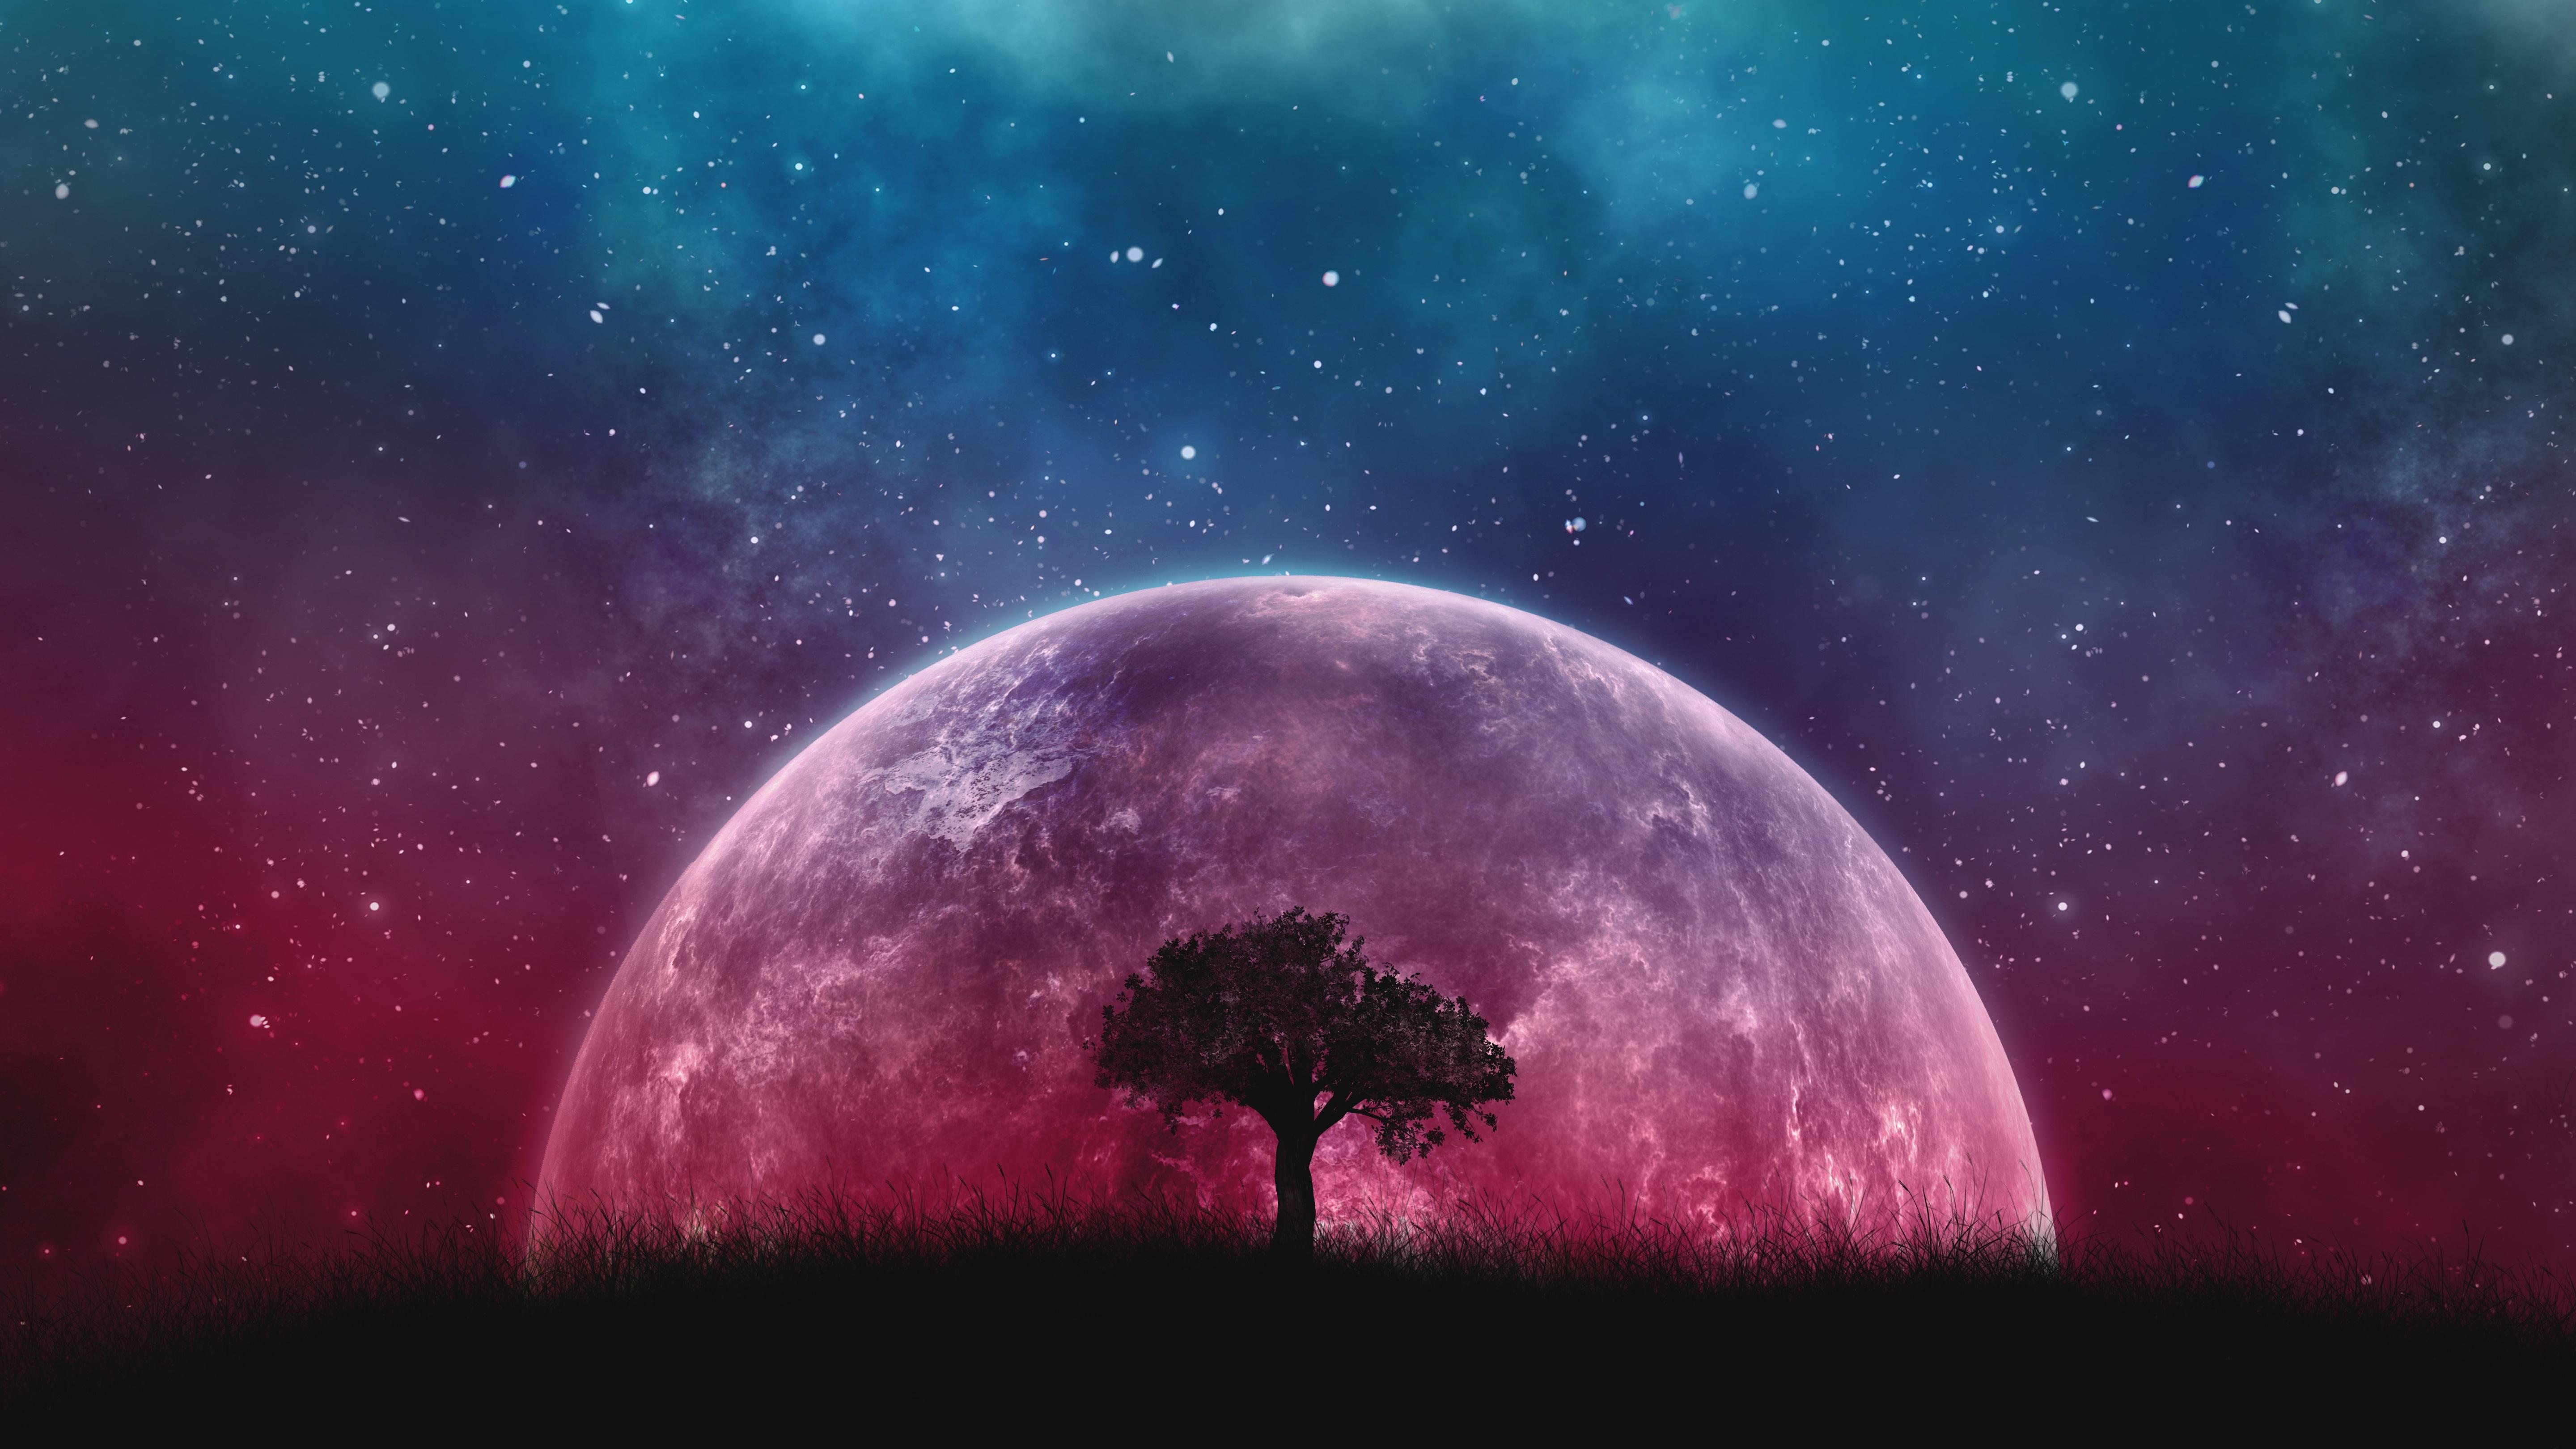 Download wallpaper 5760x3240 tree, planet, stars, galaxy, art HD